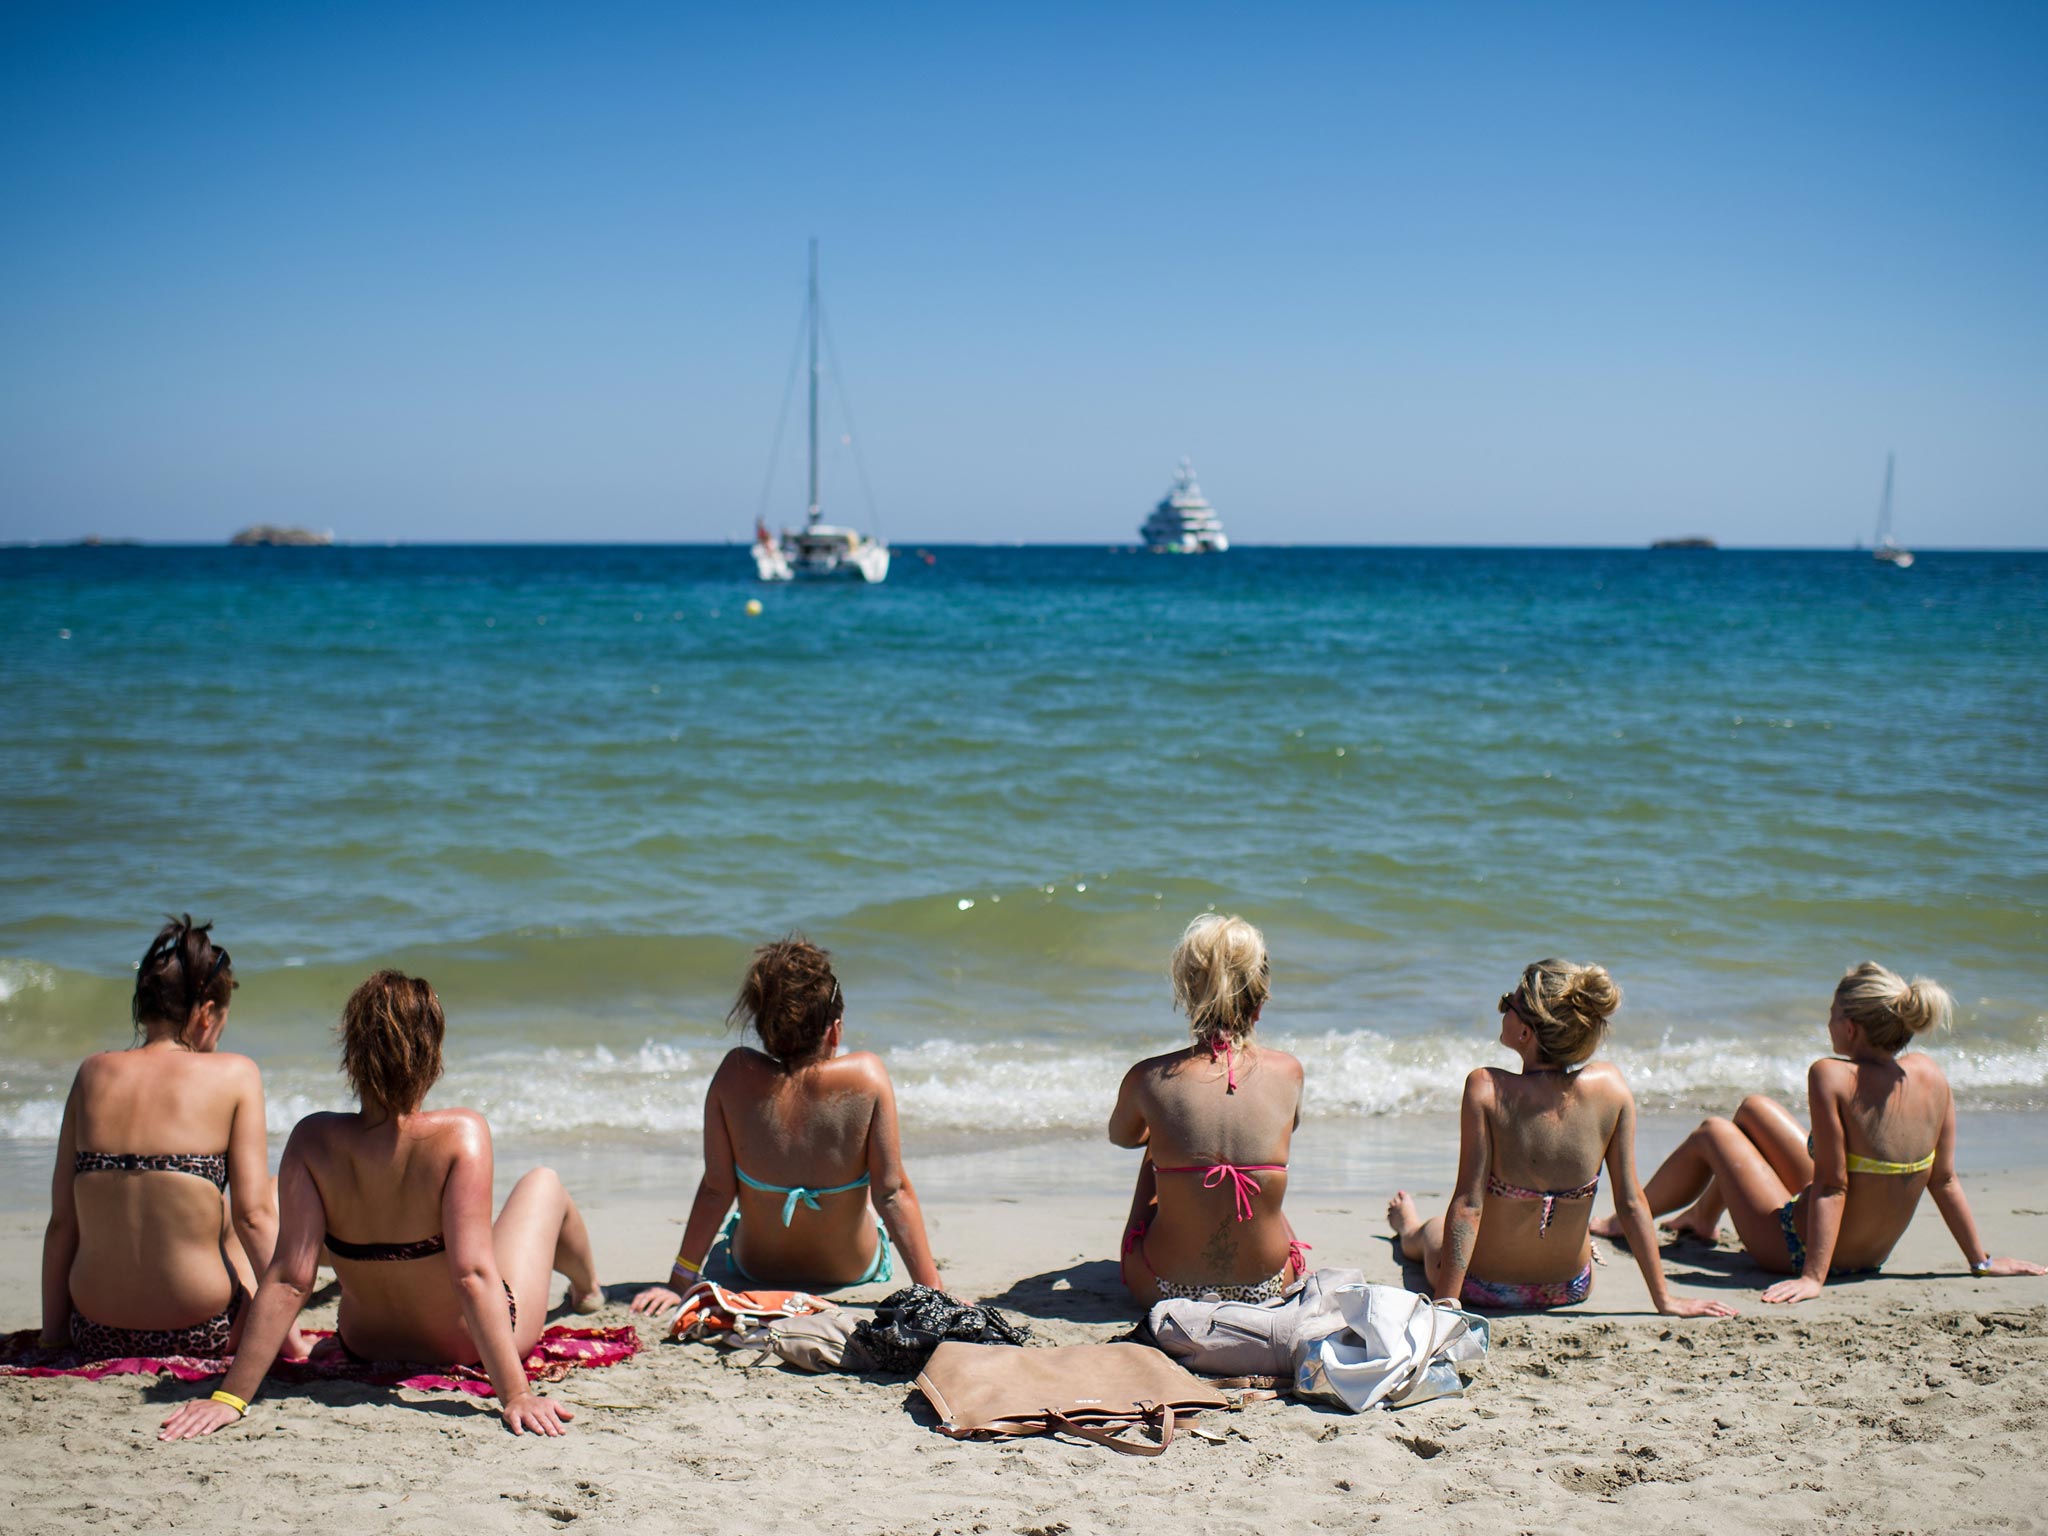 A group of tourists sunbathe at Platja d'en Bossa beach